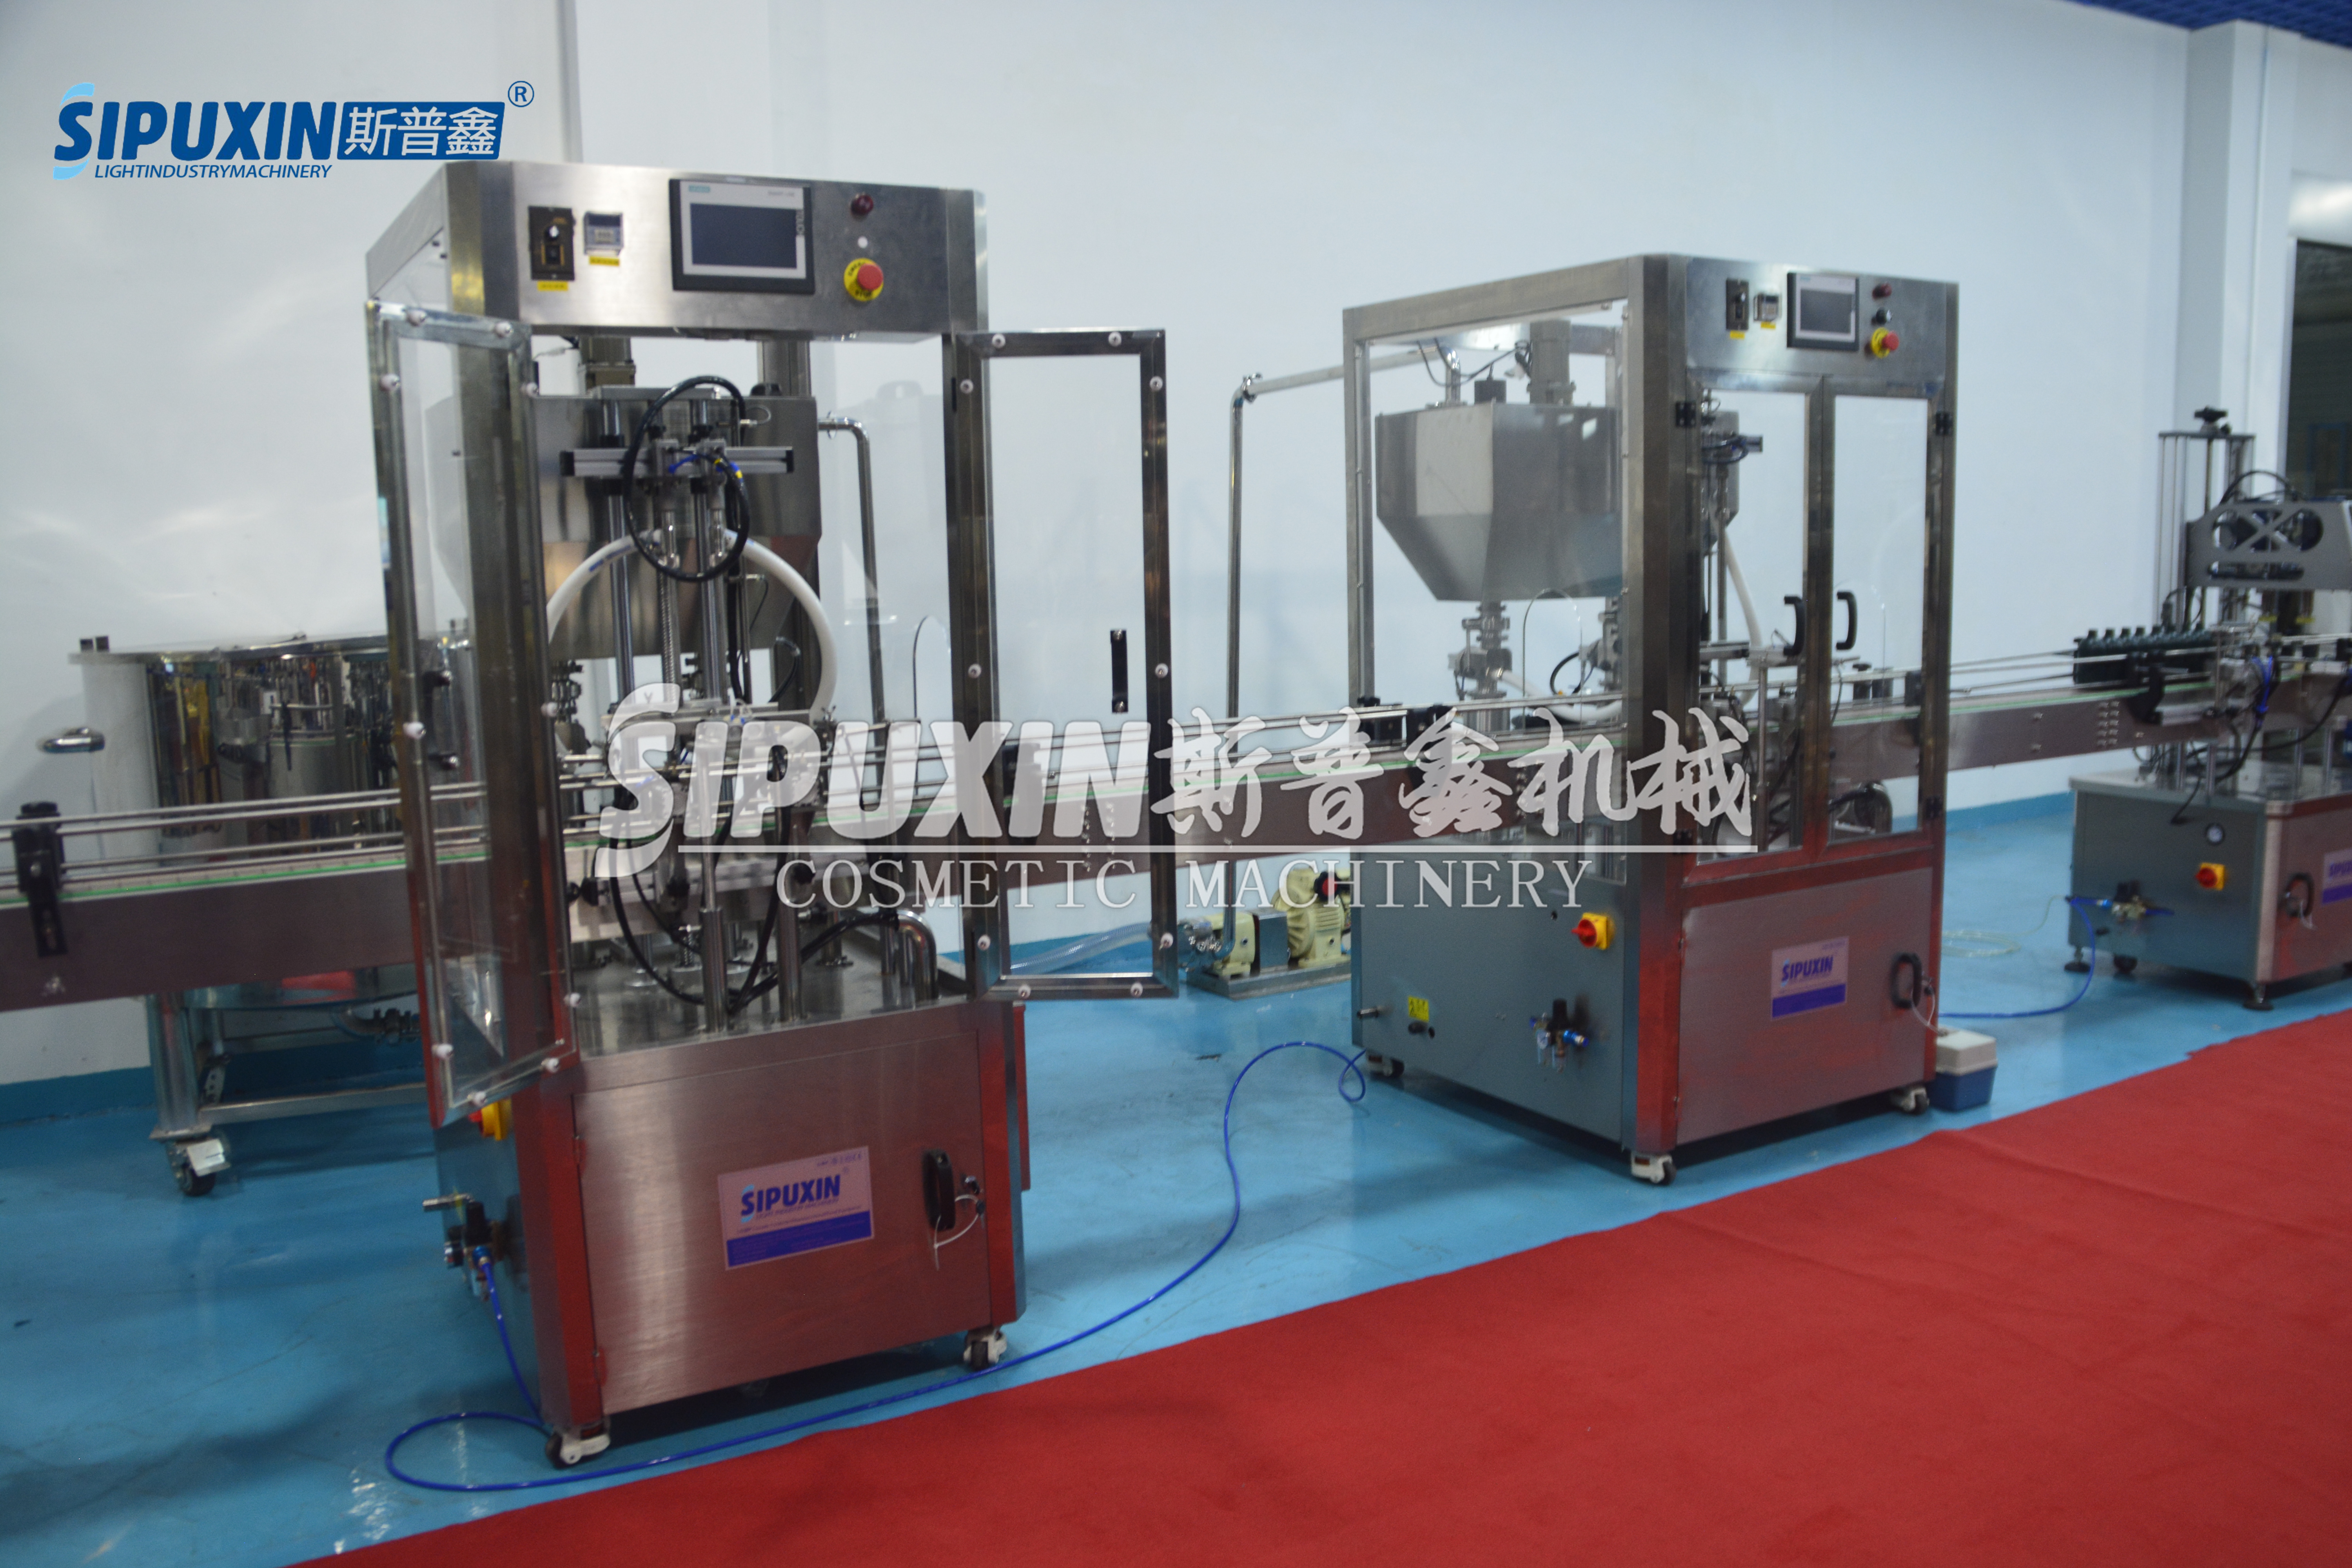 Machine de remplissage de chauffage à température à température constante Sipuxin